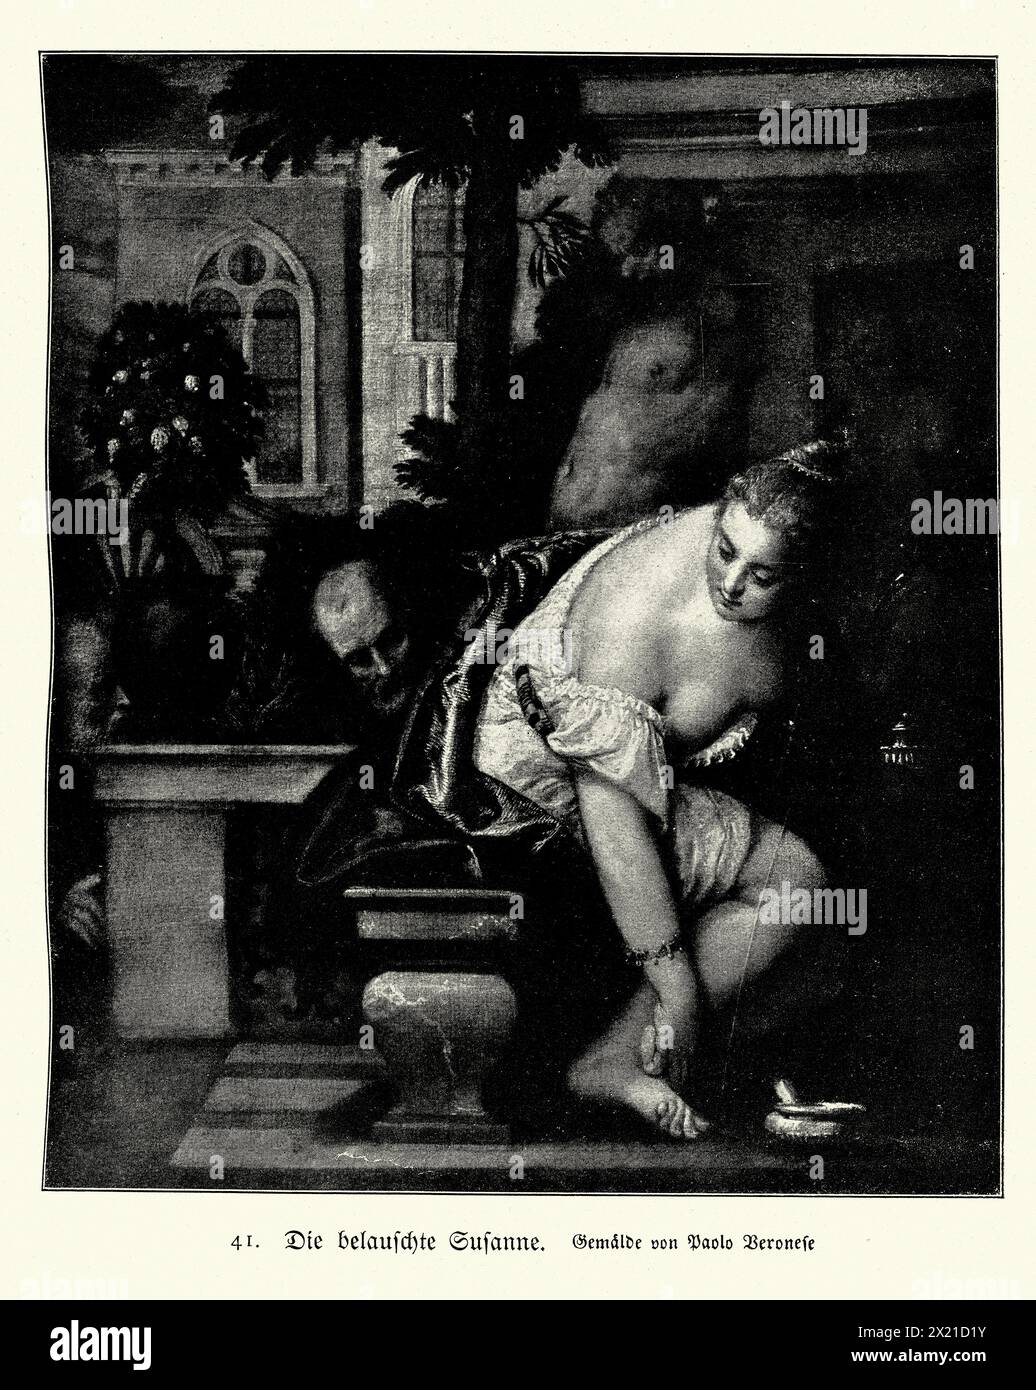 Illustration vintage, Susanna dans le bain d'après Paolo Veronese art de la Renaissance italienne Banque D'Images